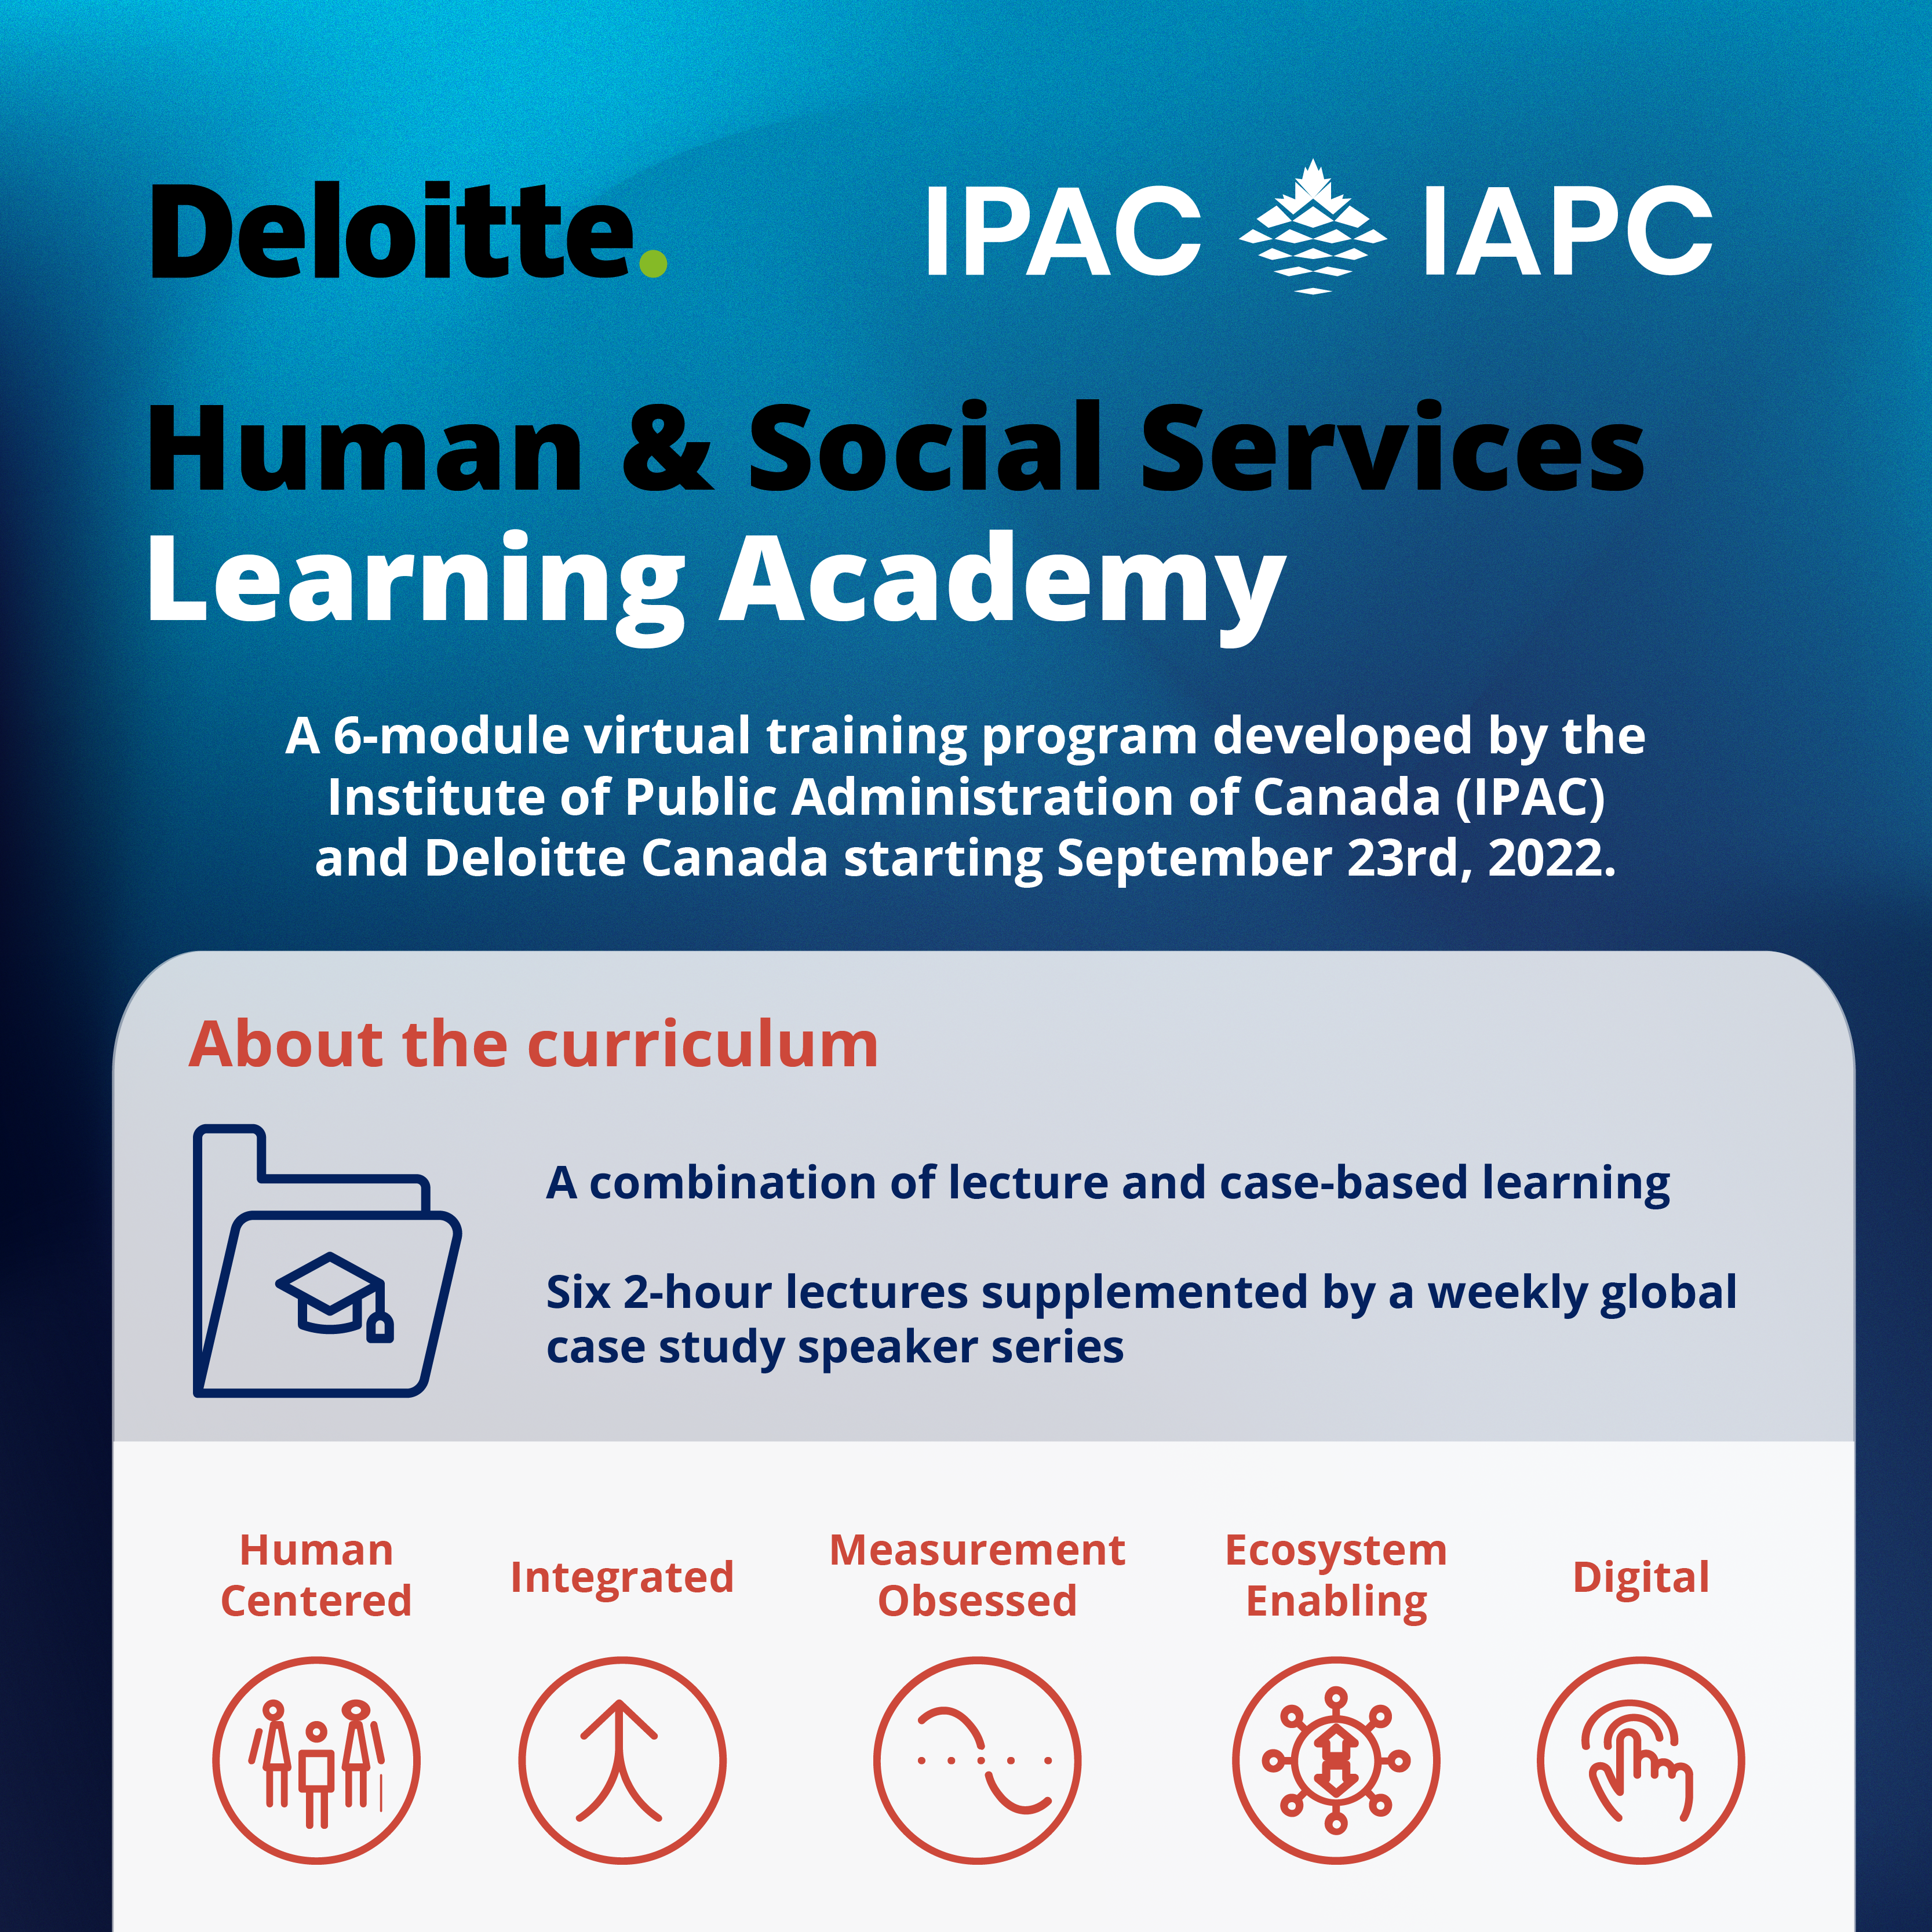 Deloitte Learning Academy